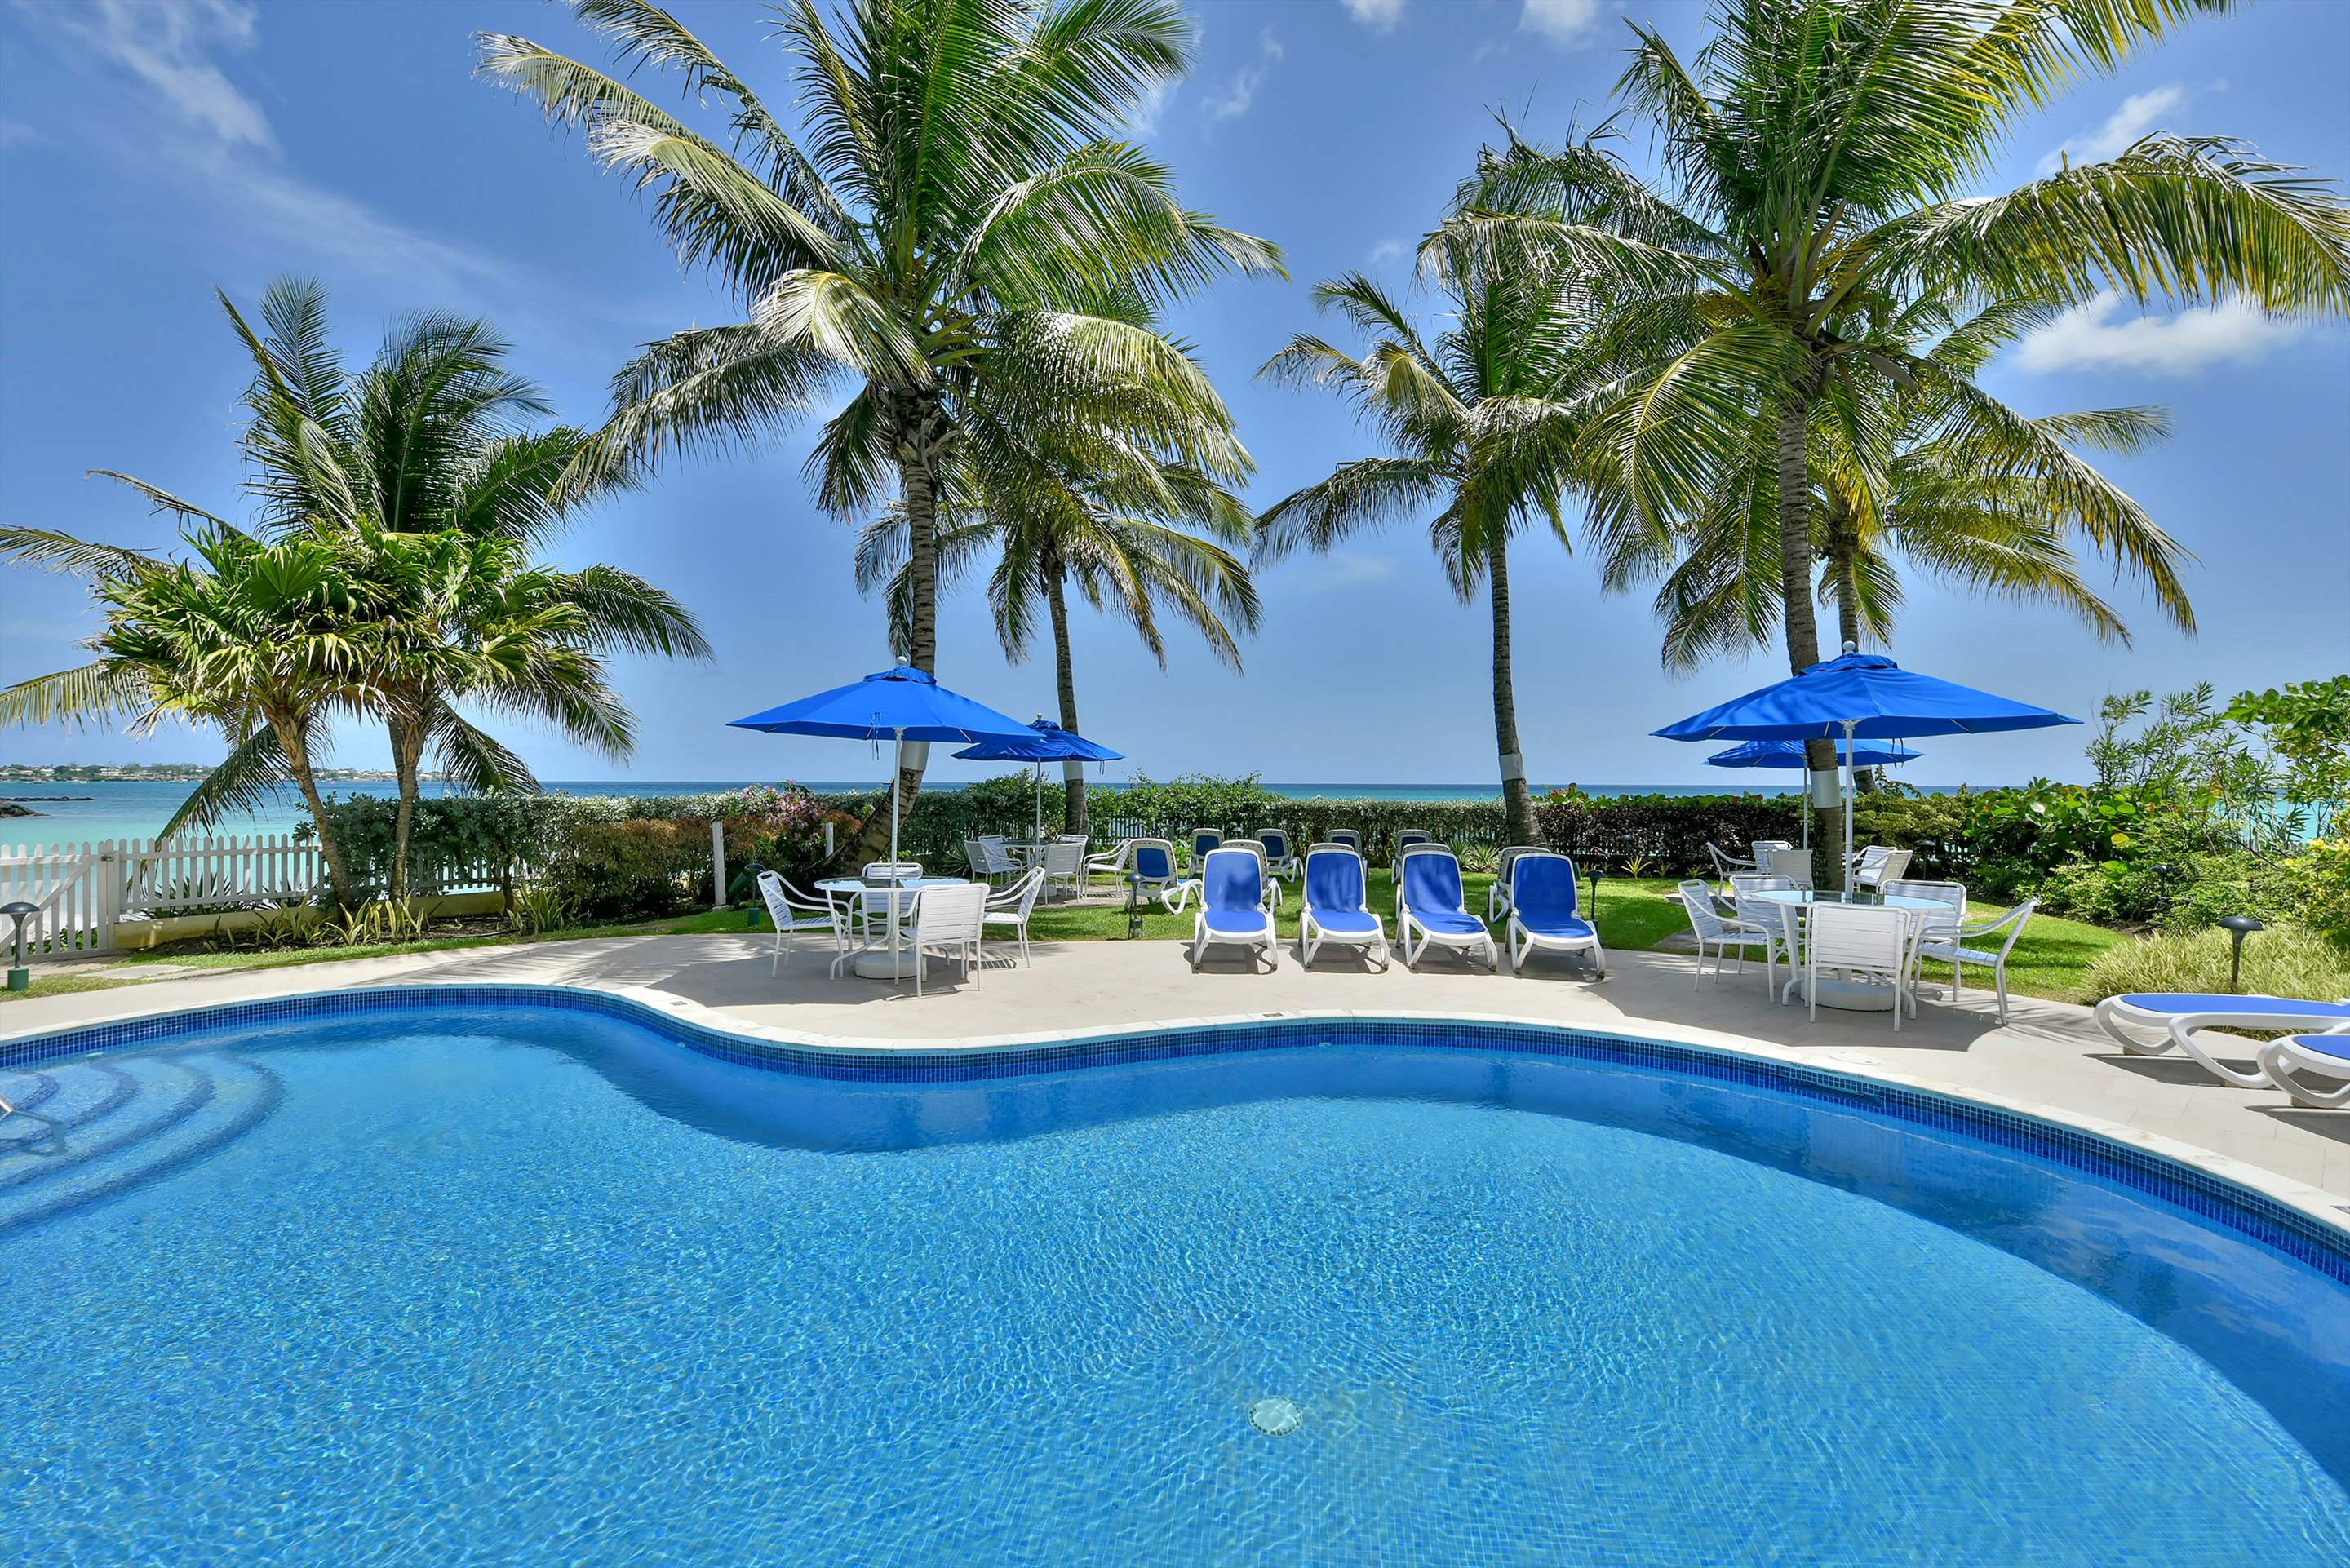 Maxwell Beach Villas 101, 2 bedroom, 2 bedroom apartment in St. Lawrence Gap & South Coast, Barbados